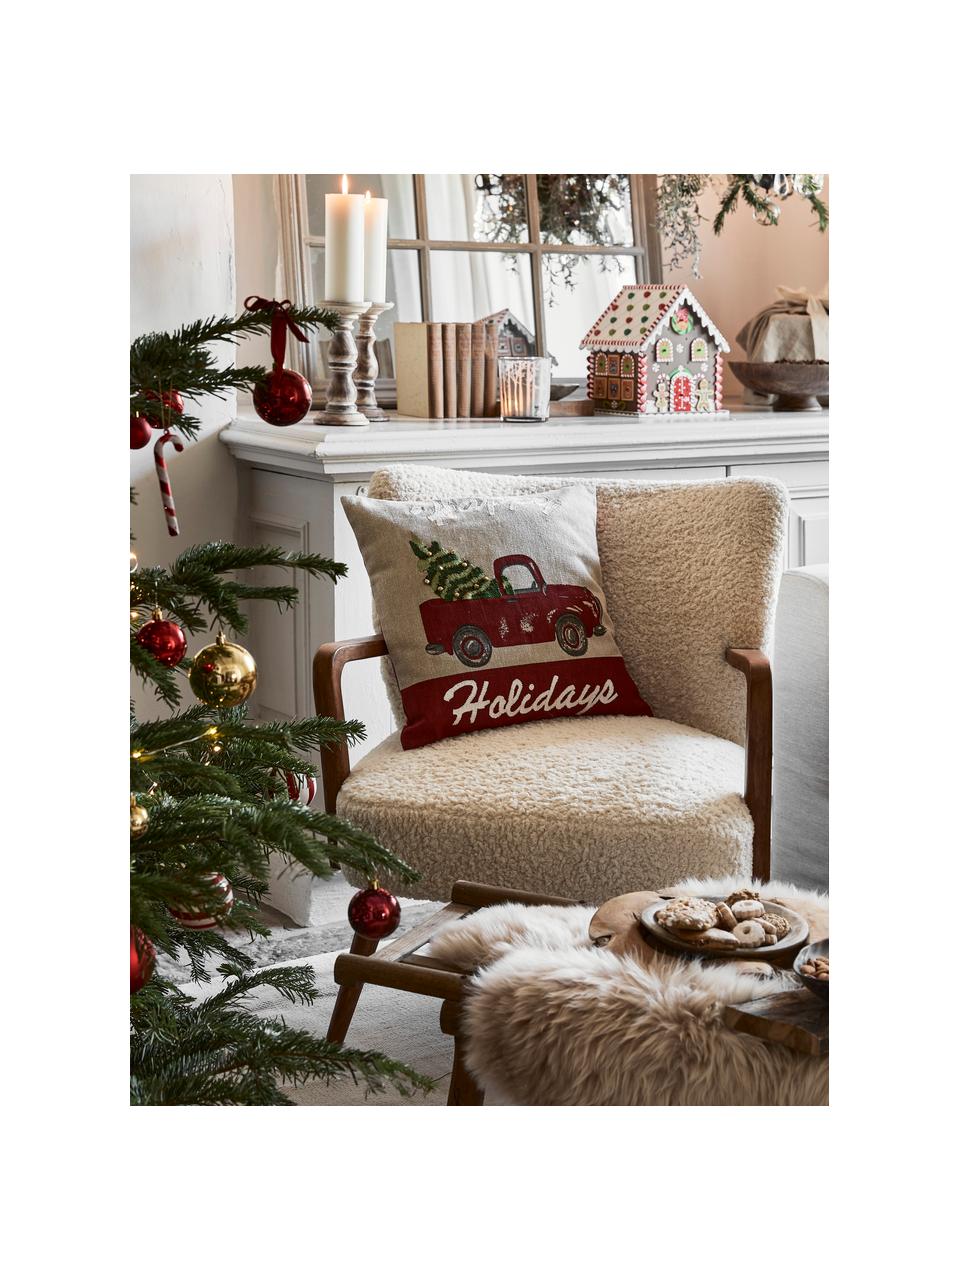 Kissenhülle Happy Holidays mit feinen bestickten Details, 100% Baumwolle, Beige, Rot, B 45 x L 45 cm